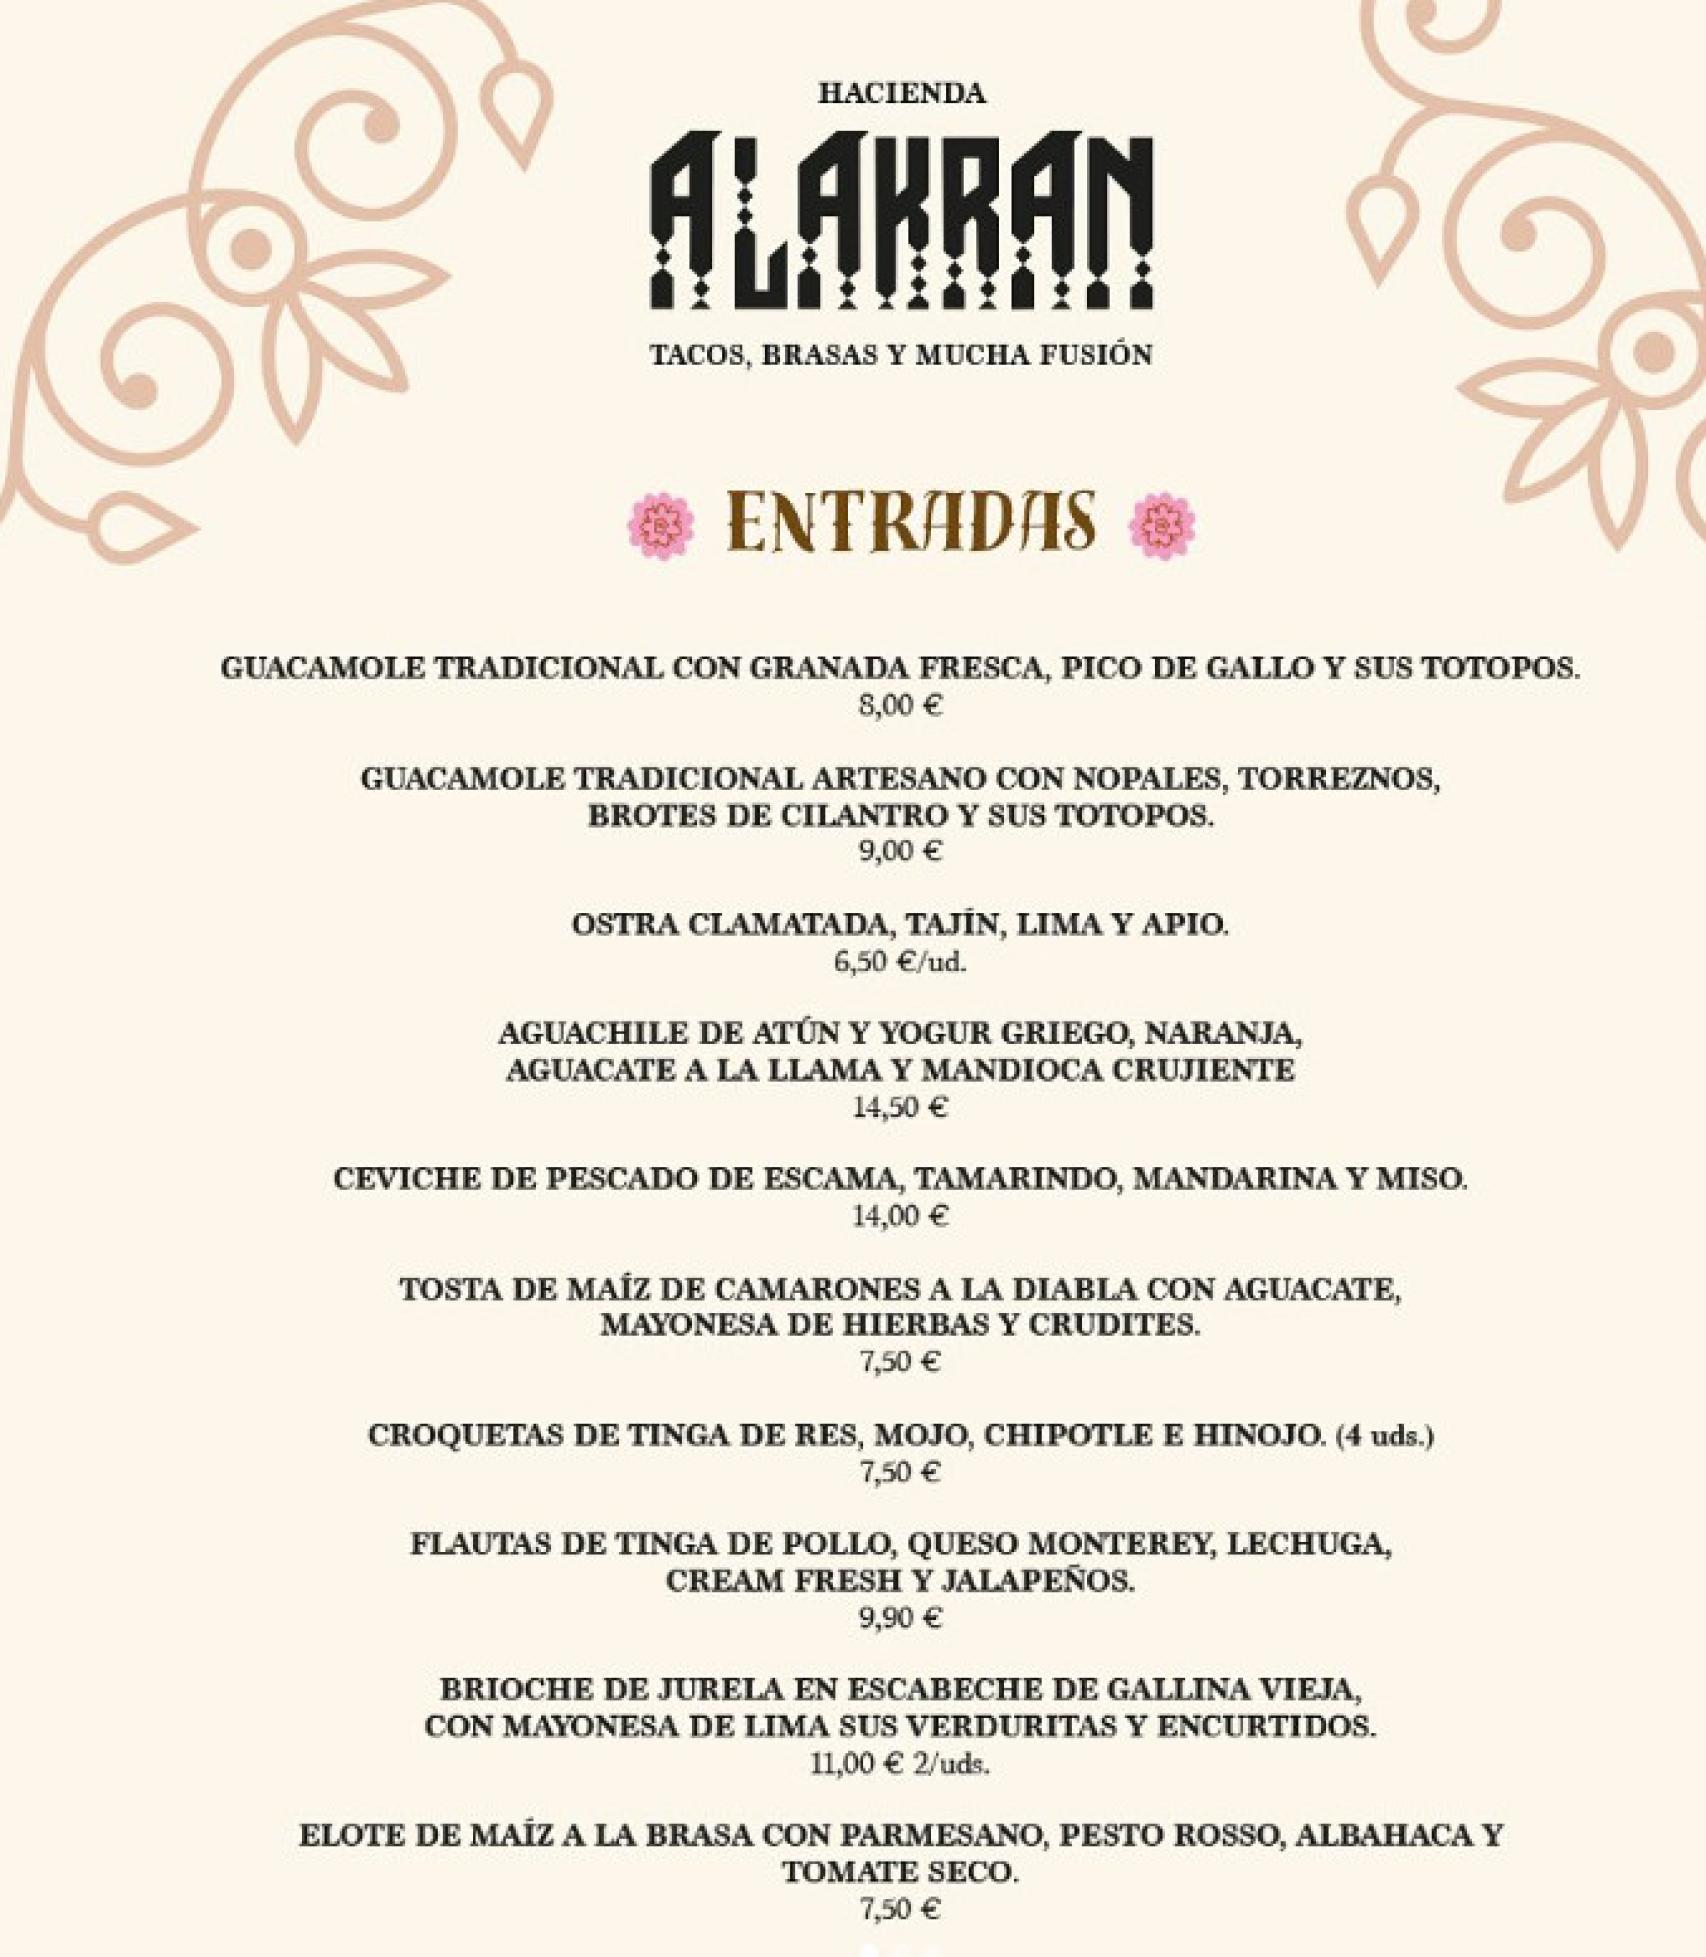 Carta de Hacienda Alakran.